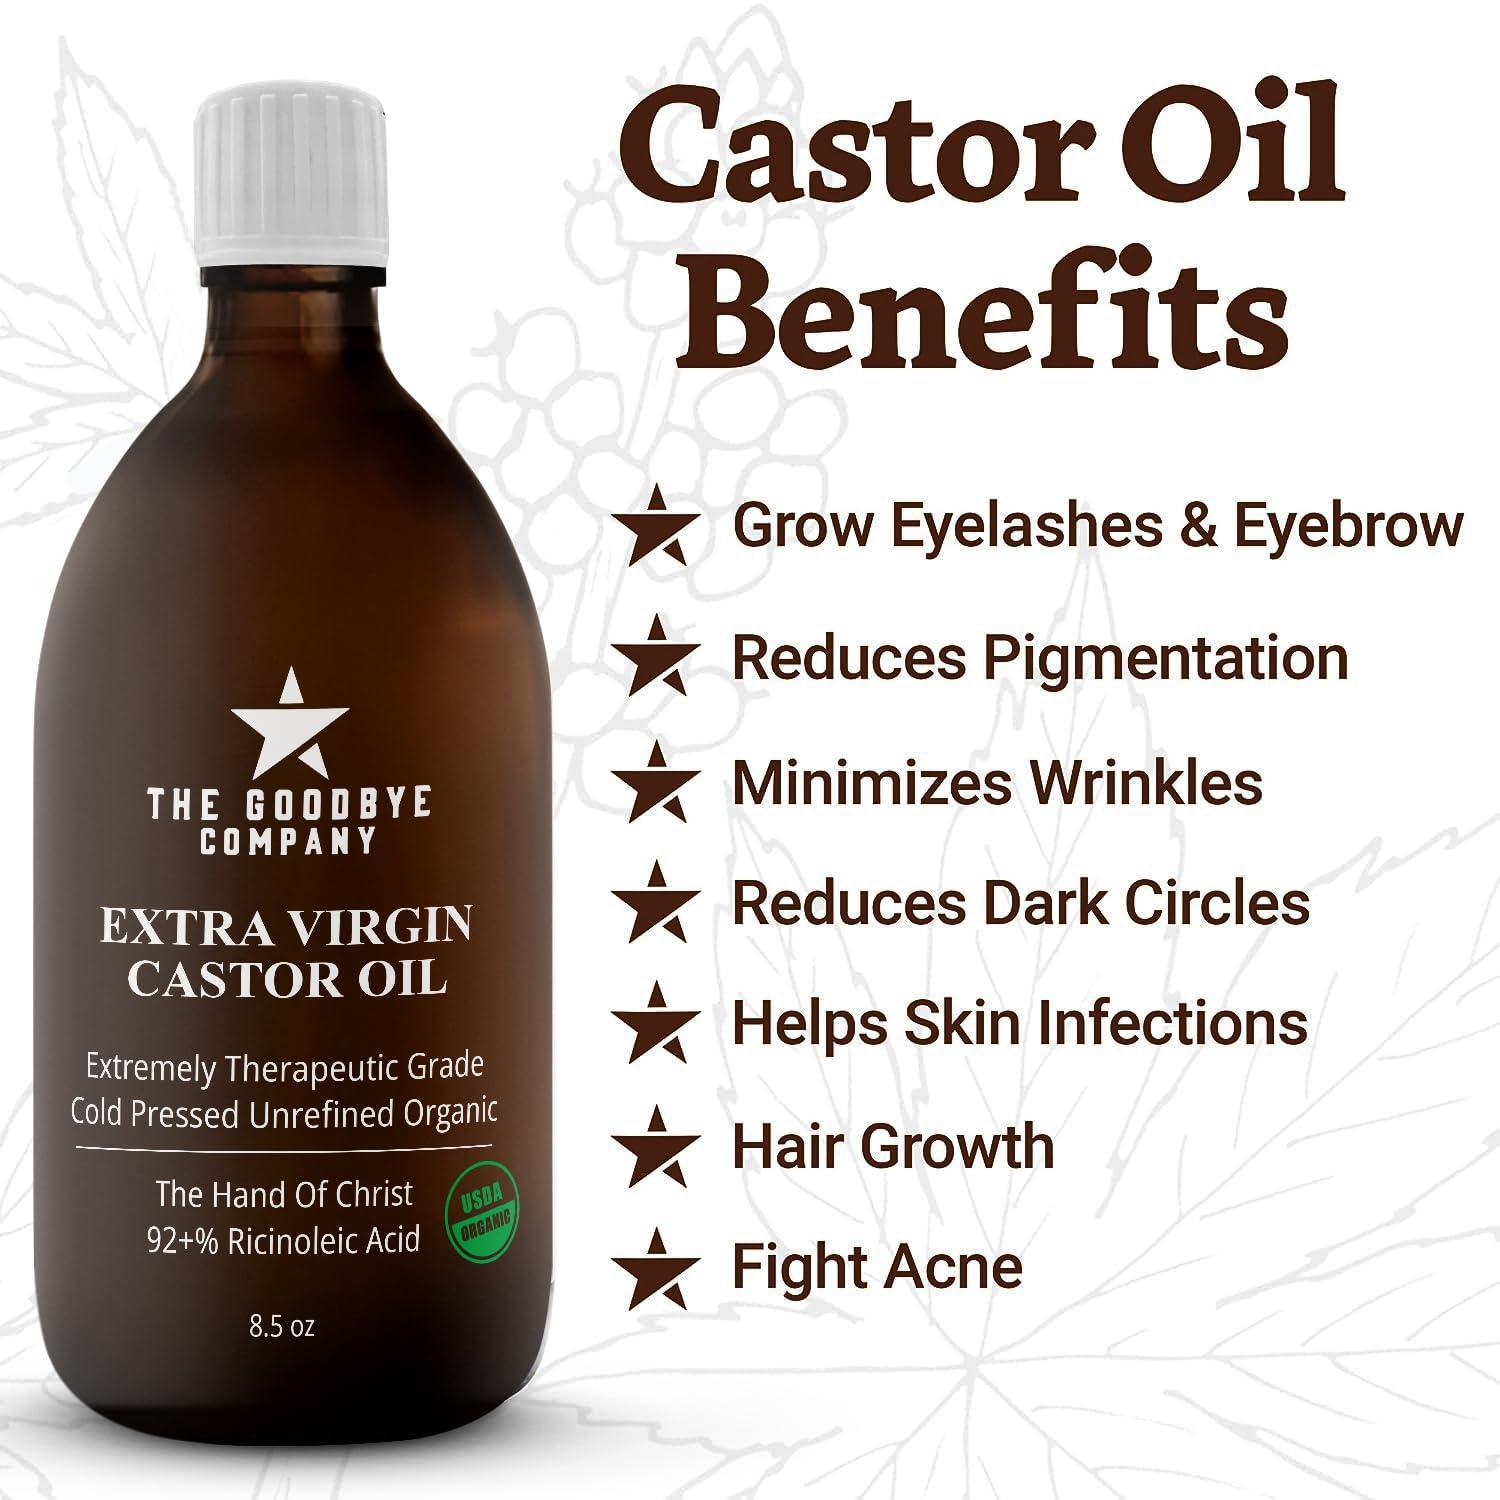 Castor Oil Usda Certified Organic Glass Bottle Pure Cold Pressed 100 Natural Virgin Castor Oil 9910